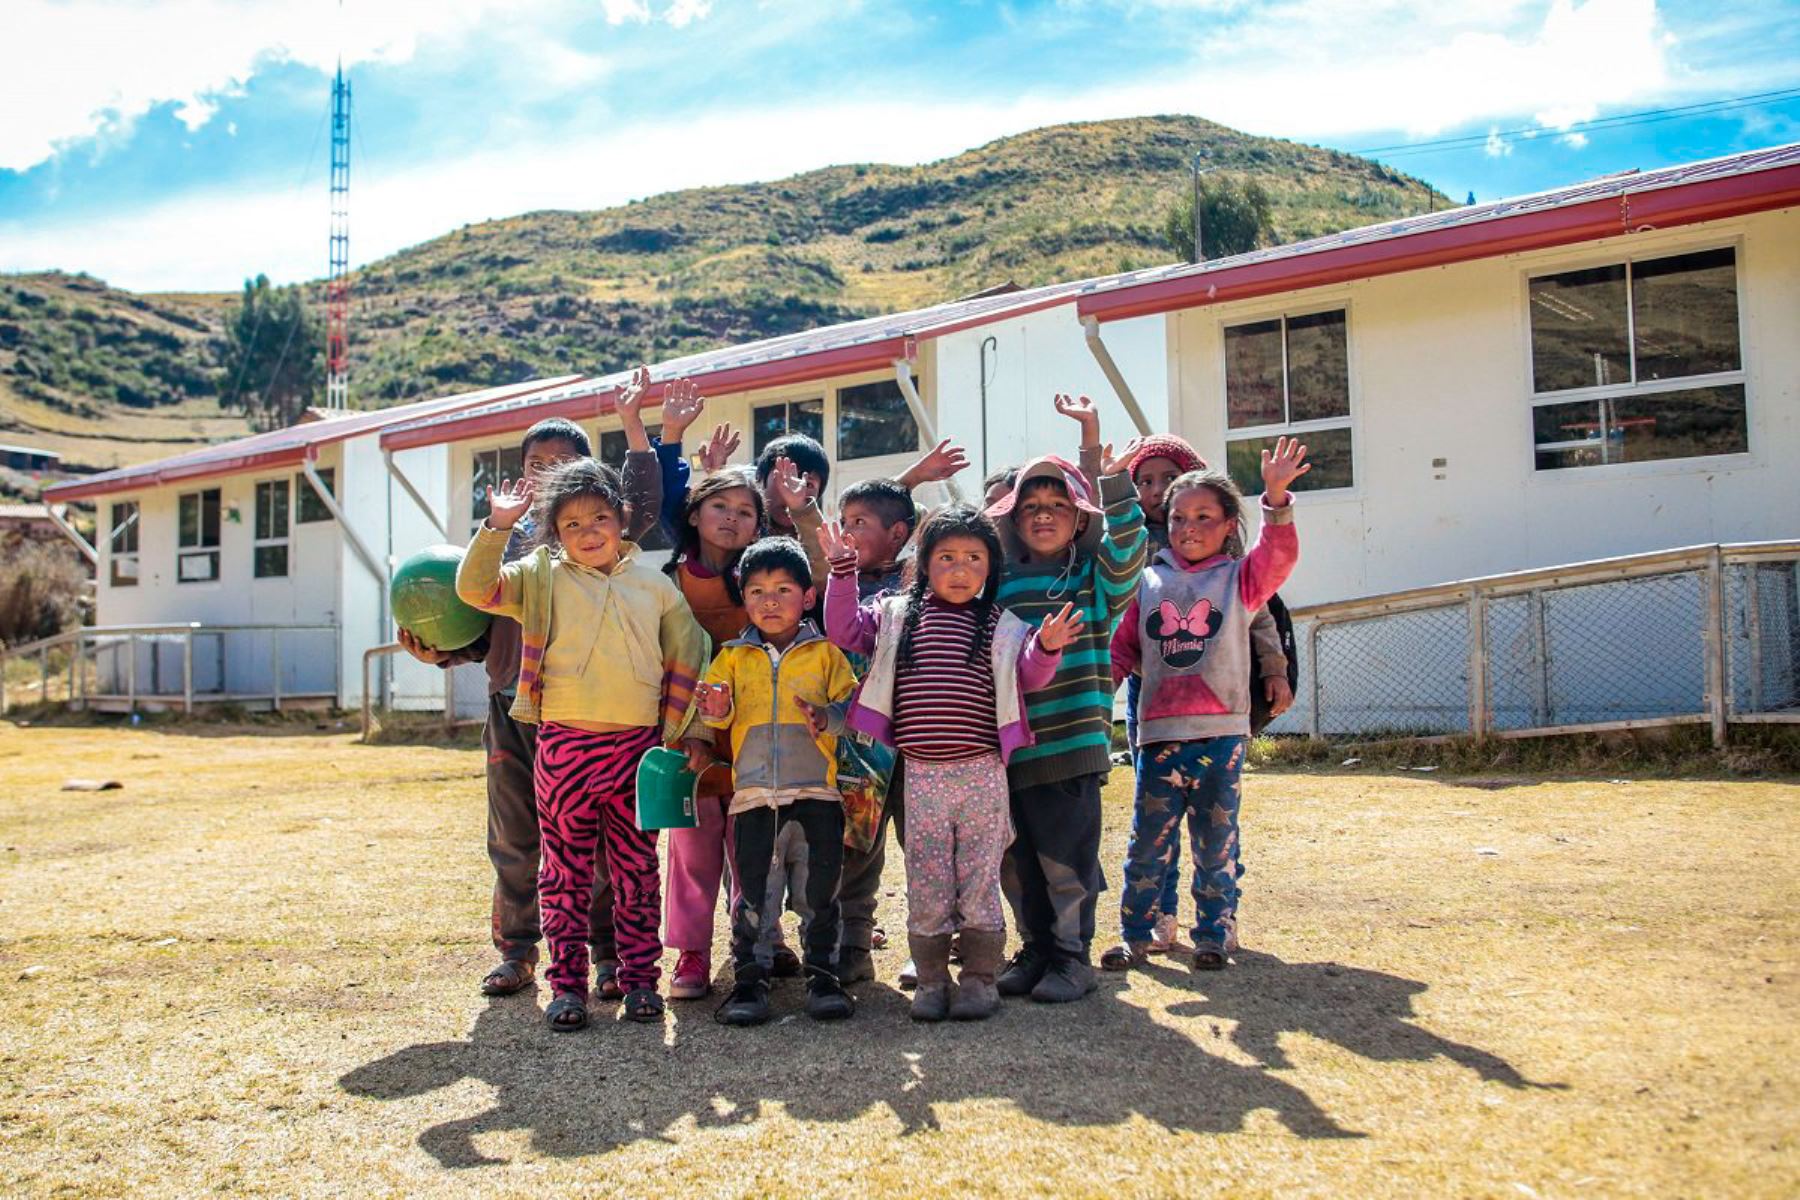 La Autoridad para la Reconstrucción con Cambios financiará la compra de ocho modernos módulos escolares temporales para siete colegios rurales de la región Cajamarca, dañados por el fenómeno de El Niño Costero.